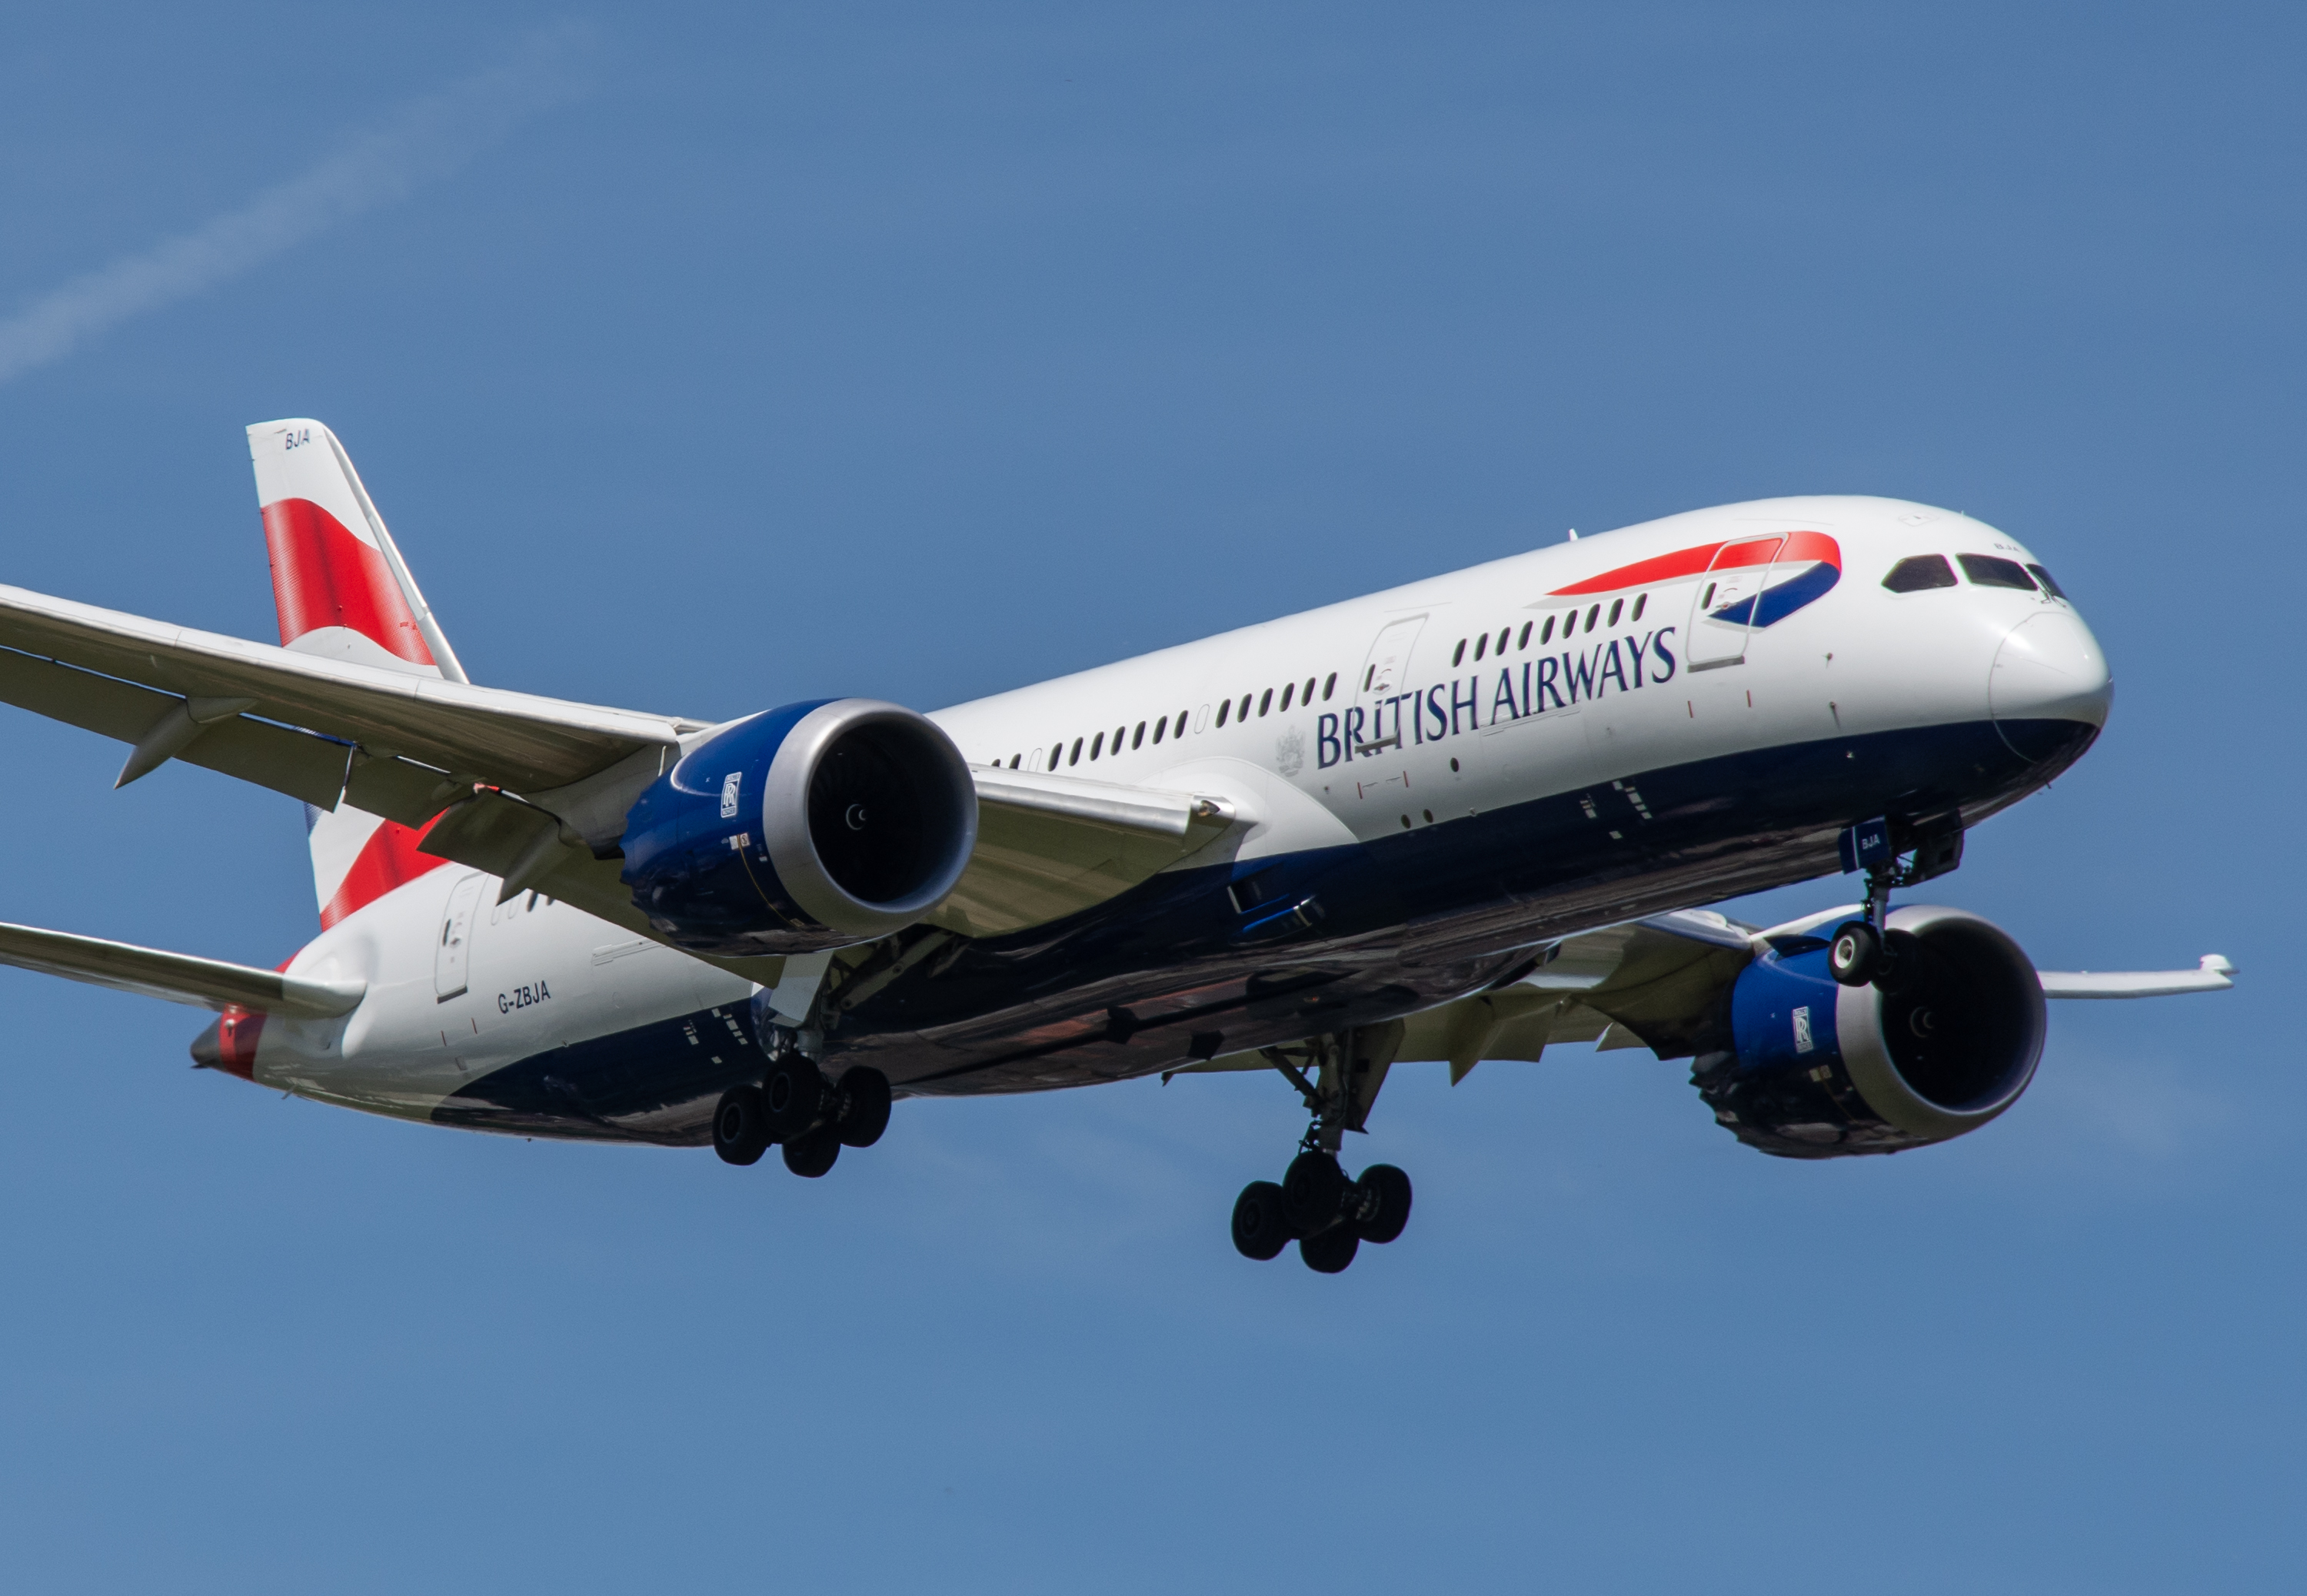 G-ZBJA/GZBJA British Airways Boeing 787 Airframe Information - AVSpotters.com